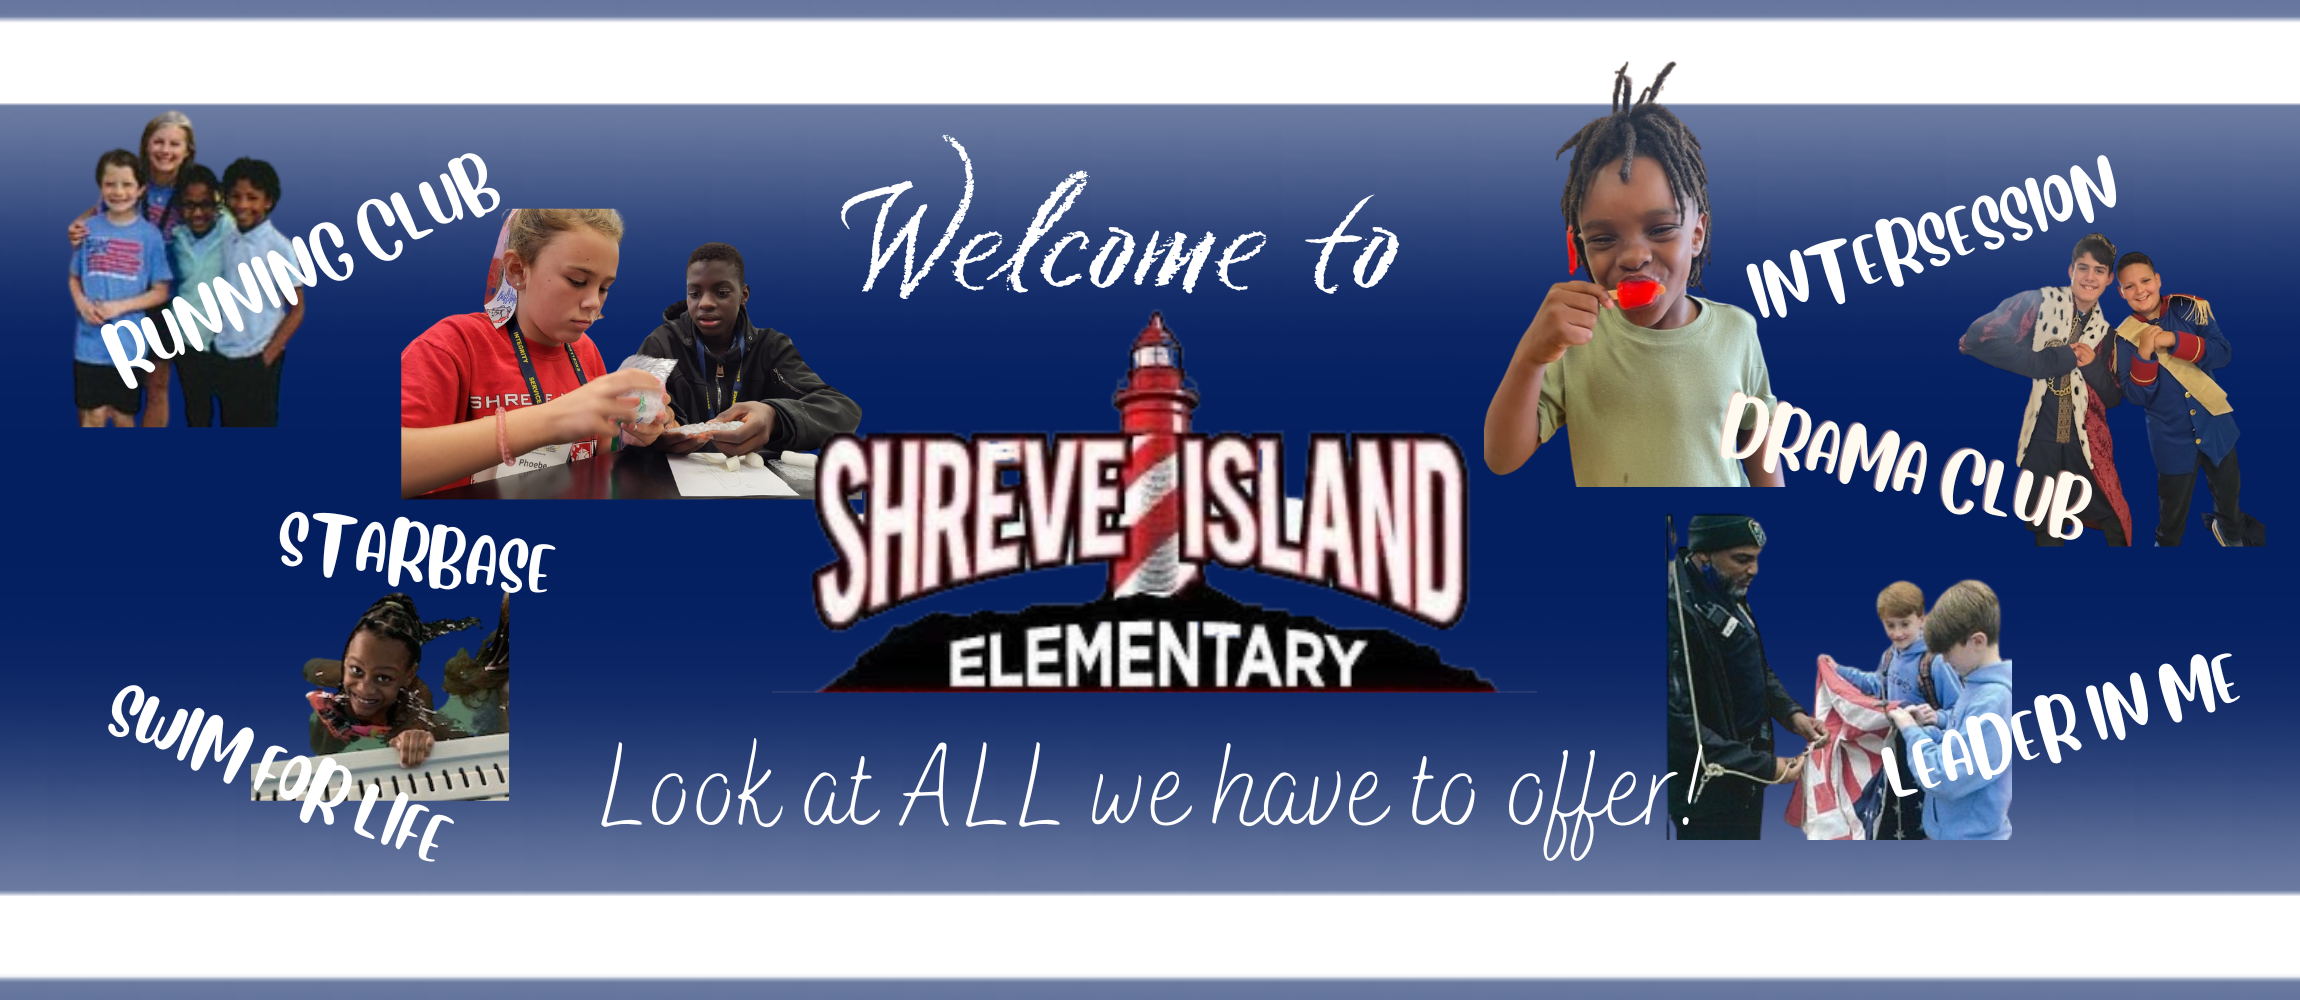 shreve island welcomes you